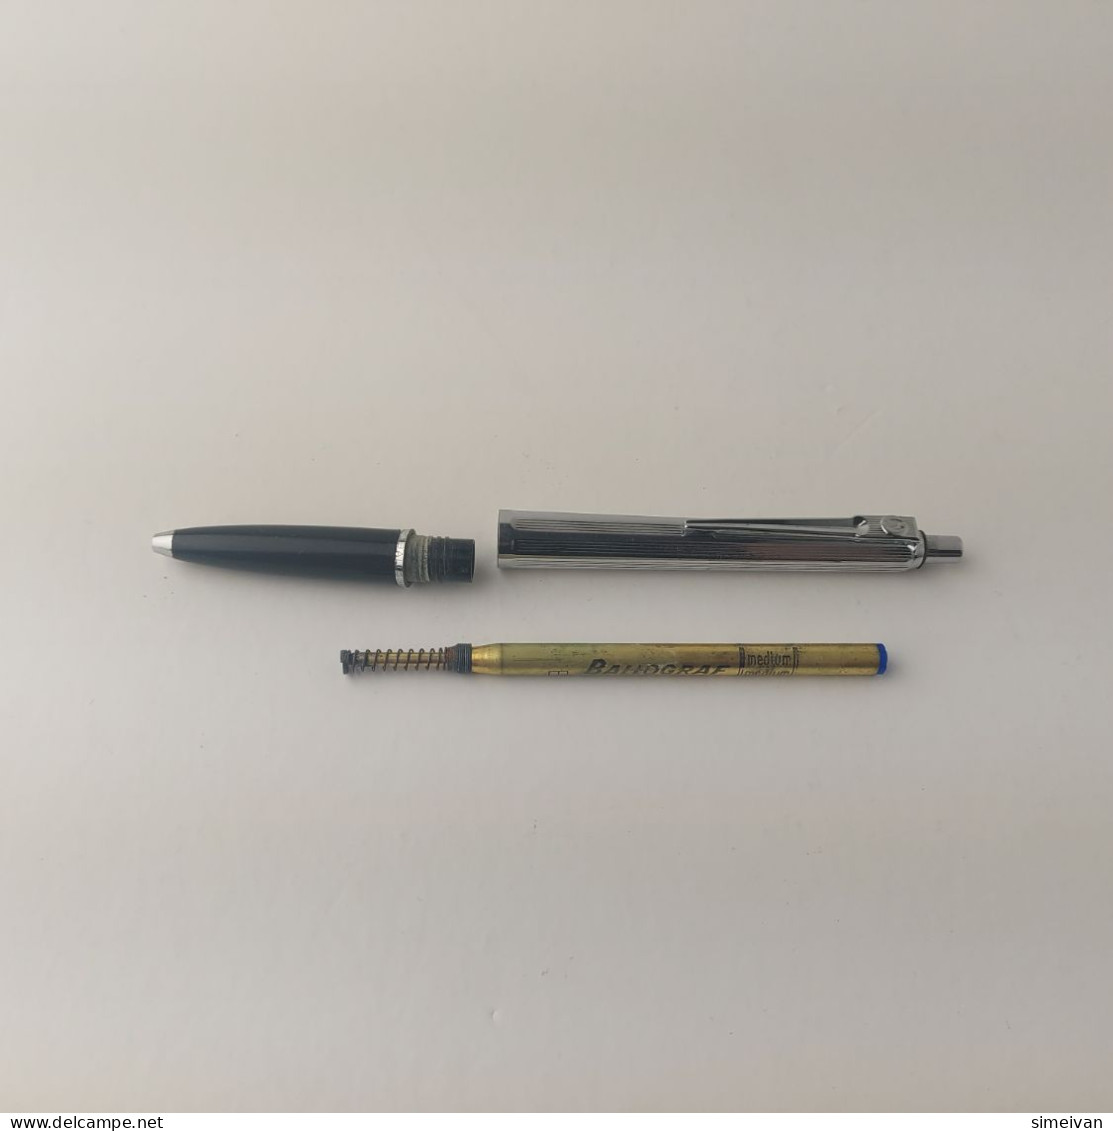 Vintage Ballograf Epoca Ballpoint Pen Black Chrome Plastic Made in Sweden #5506